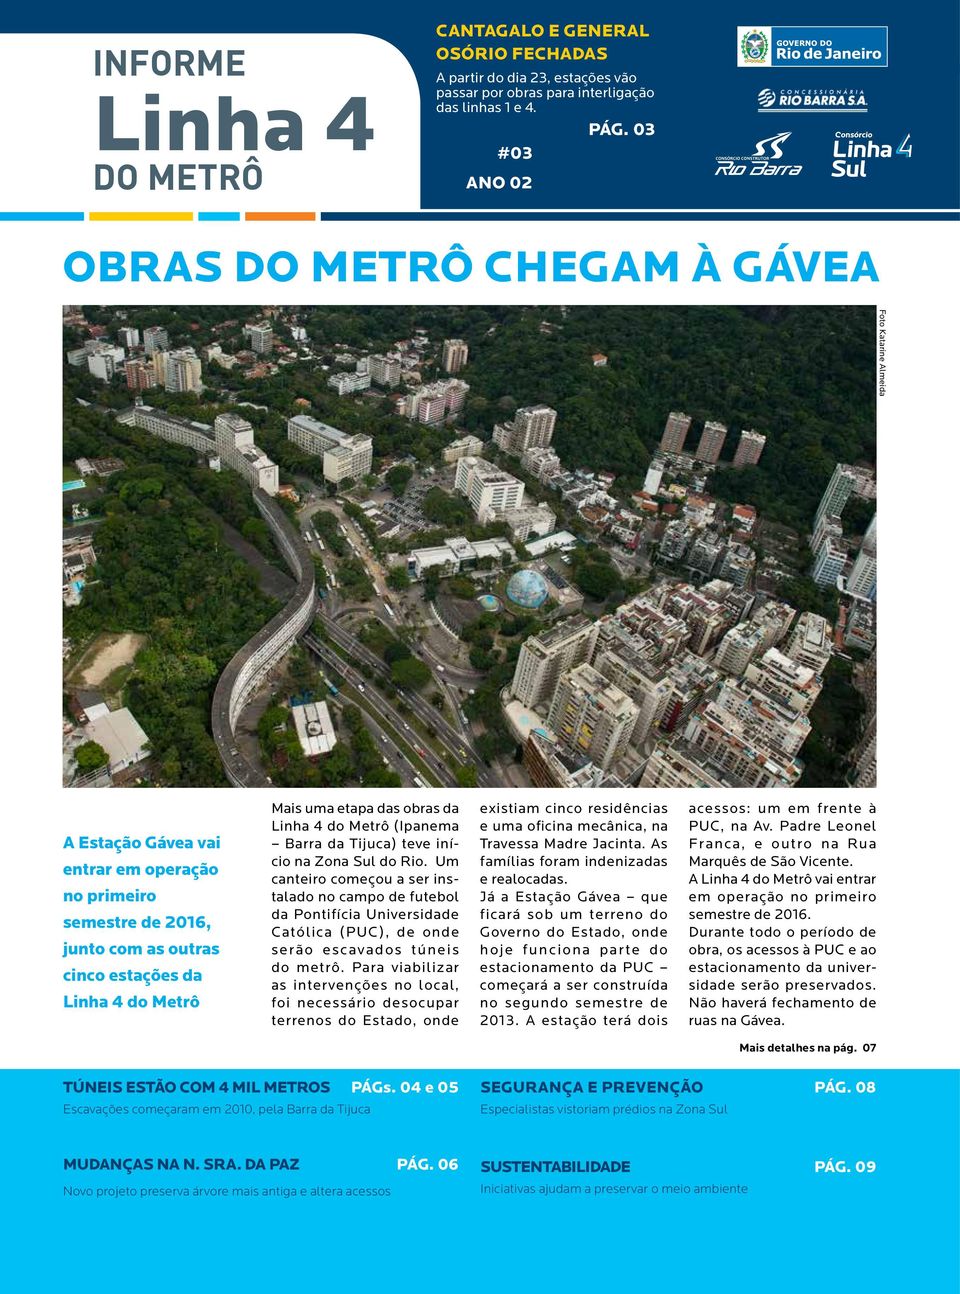 do Metrô Mais uma etapa das obras da Linha 4 do Metrô (Ipanema Barra da Tijuca) teve início na Zona Sul do Rio.